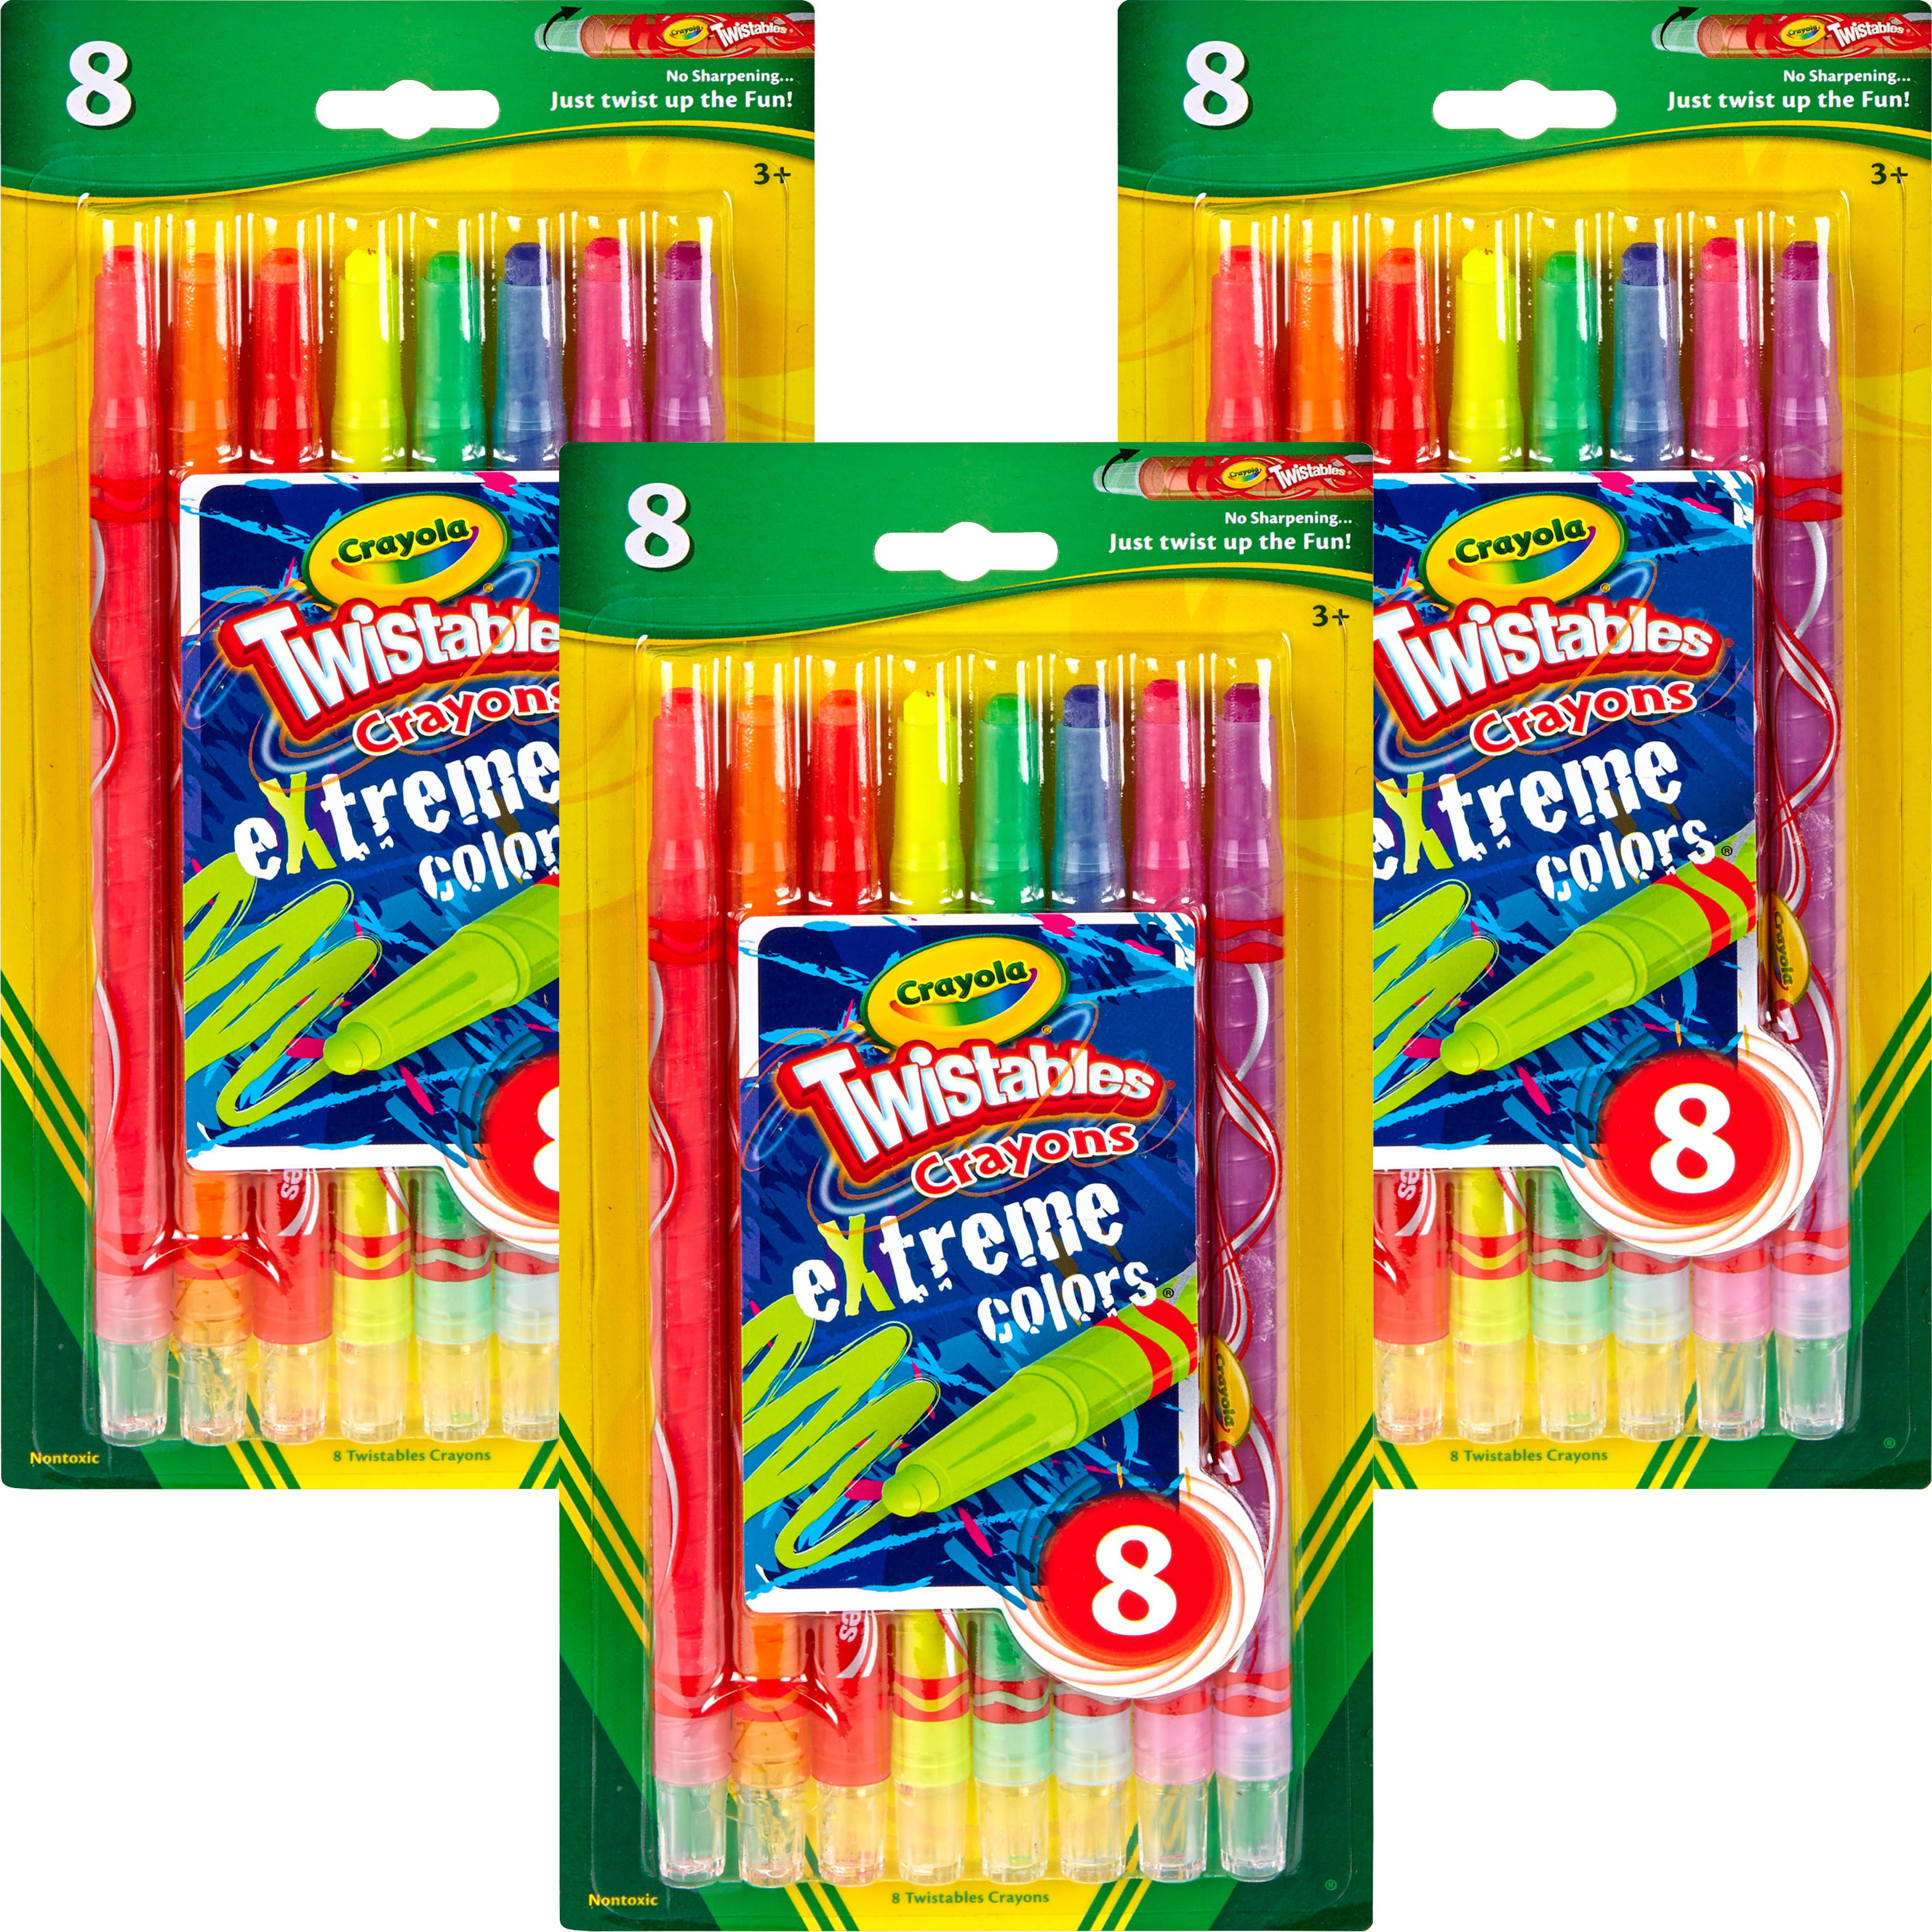 Crayola twistable crayons